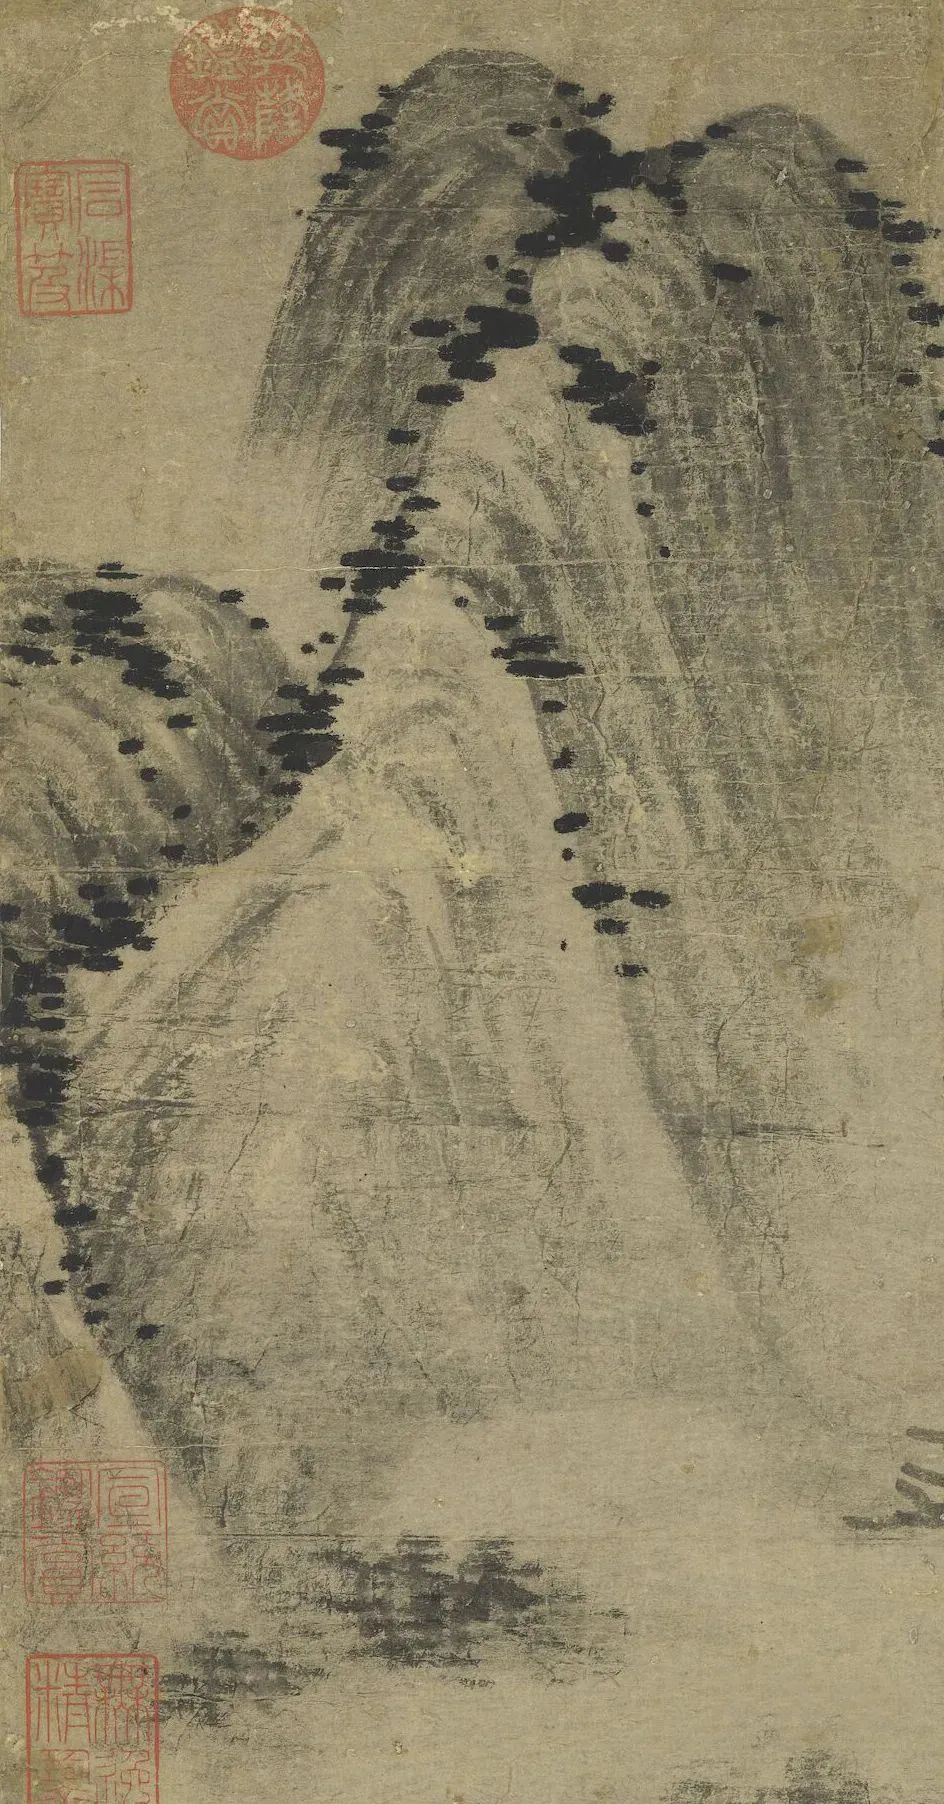 元代画家柯九思的山水画《溪亭山色图》欣赏